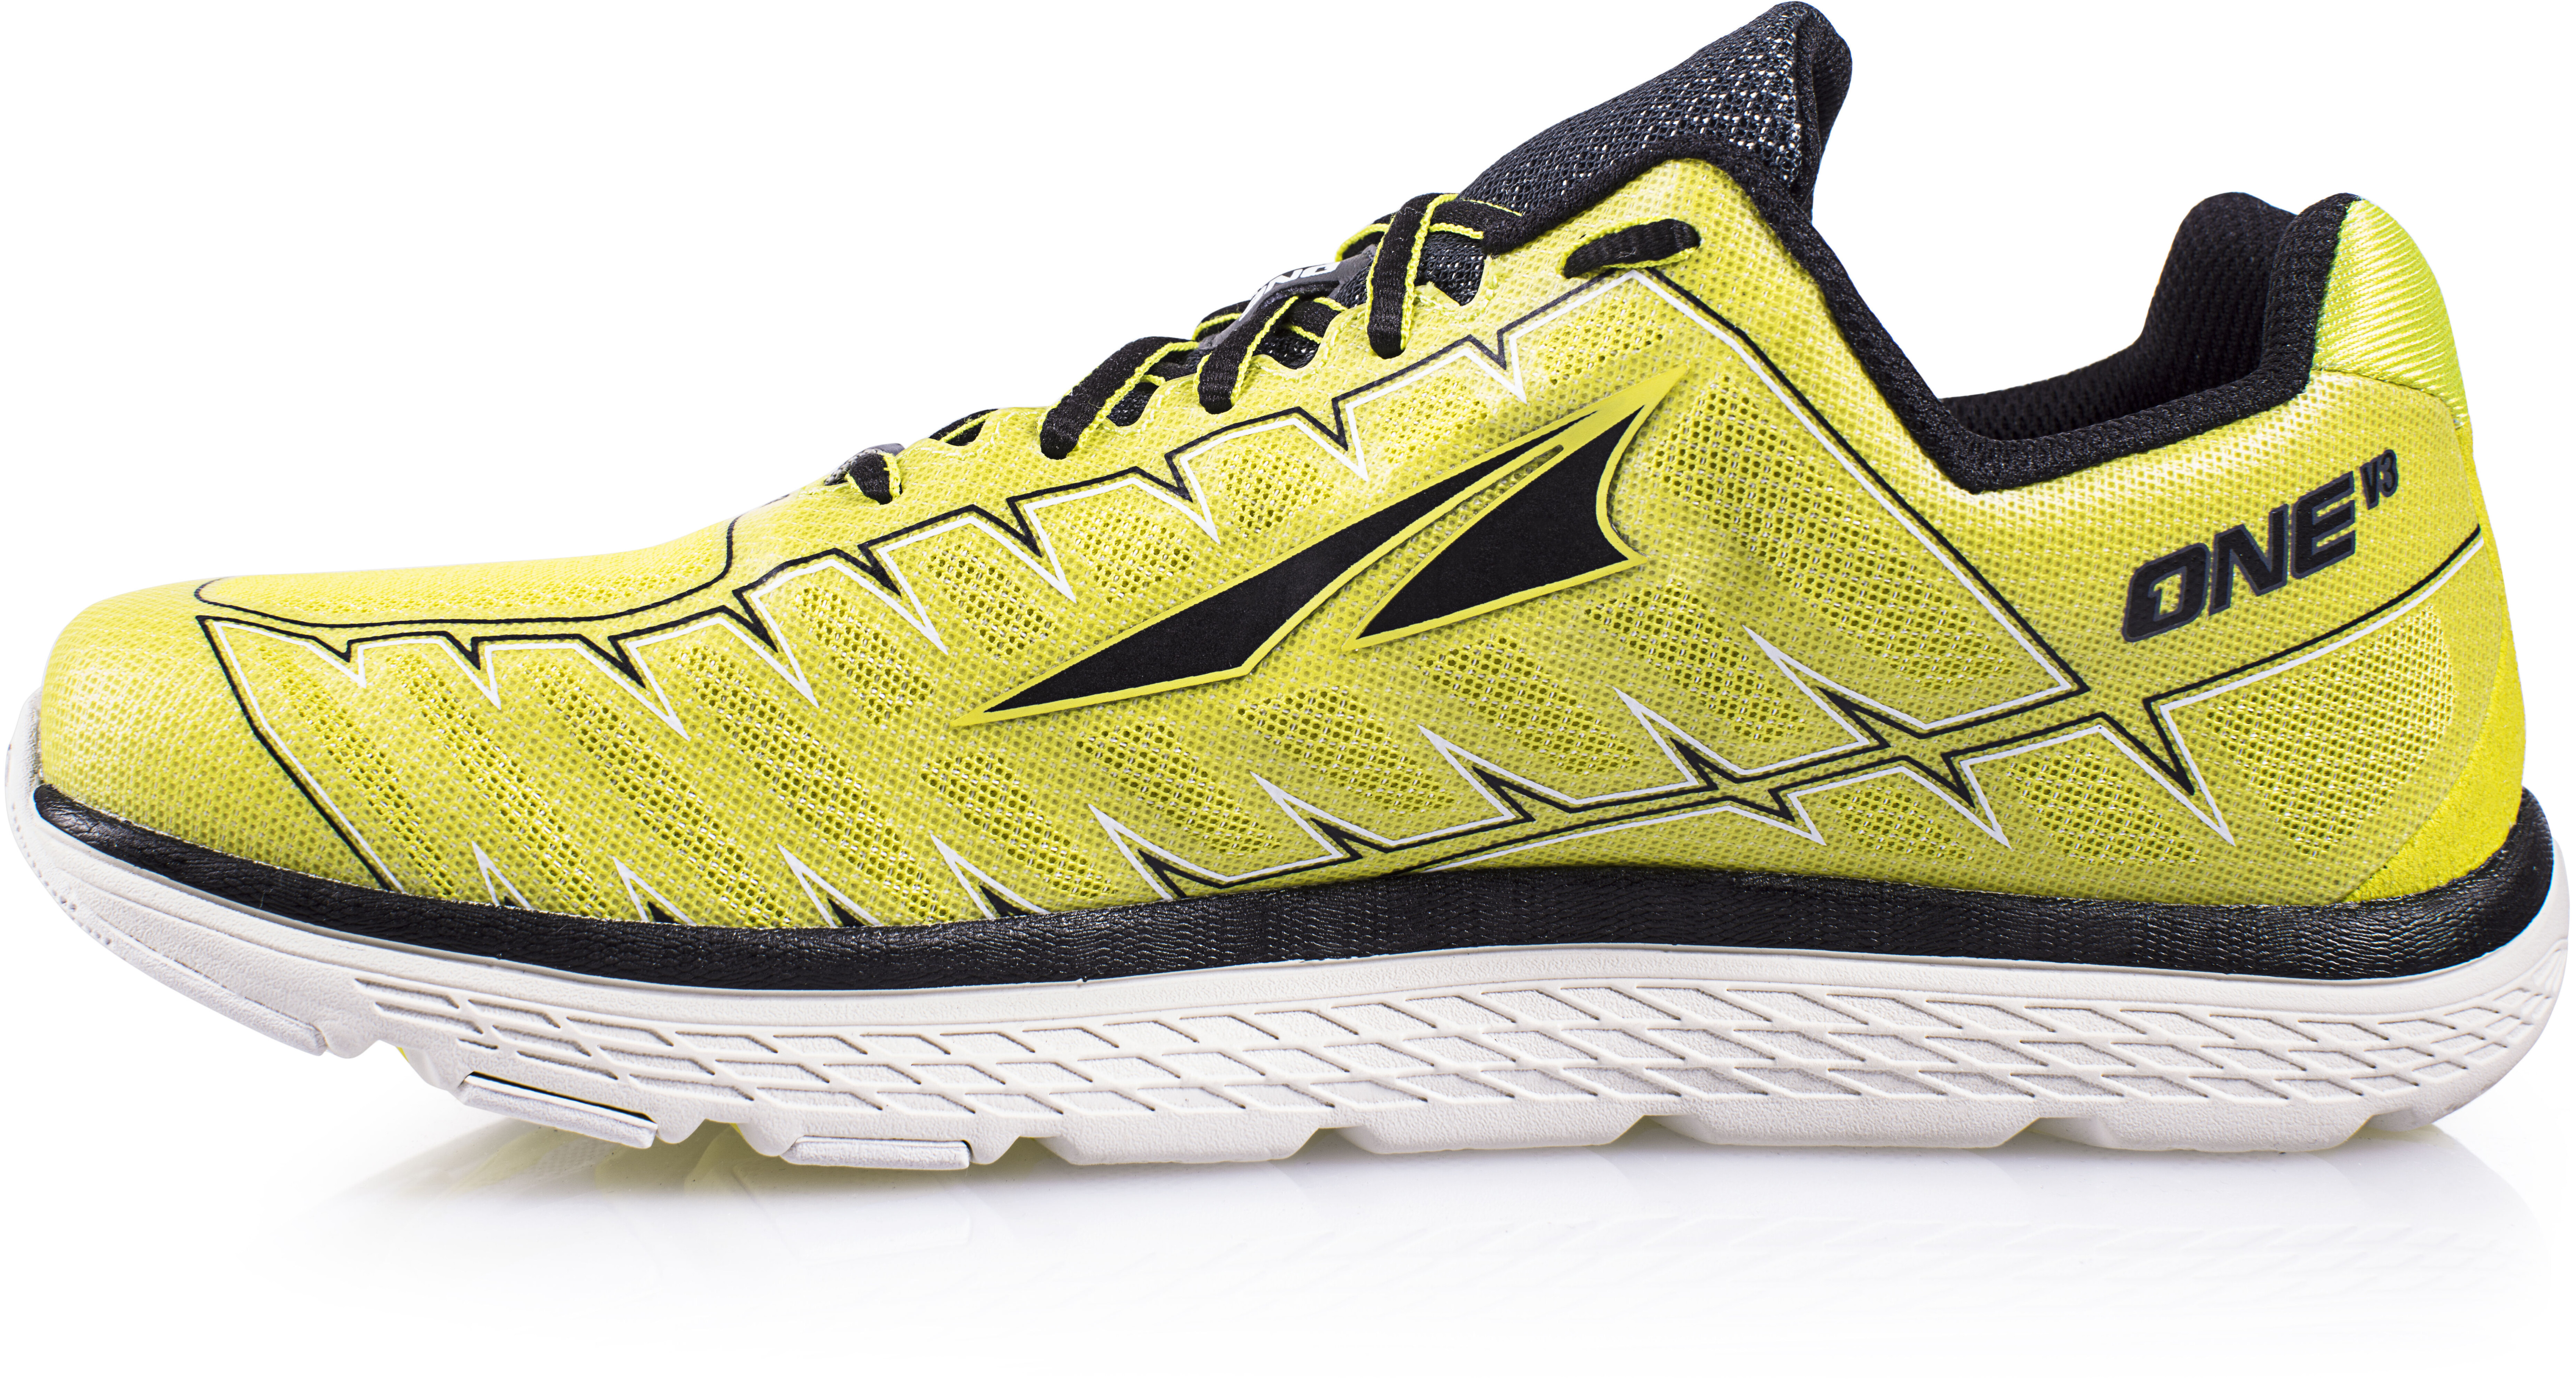 Altra One V3 Marathon Running Shoes Men lime online kaufen